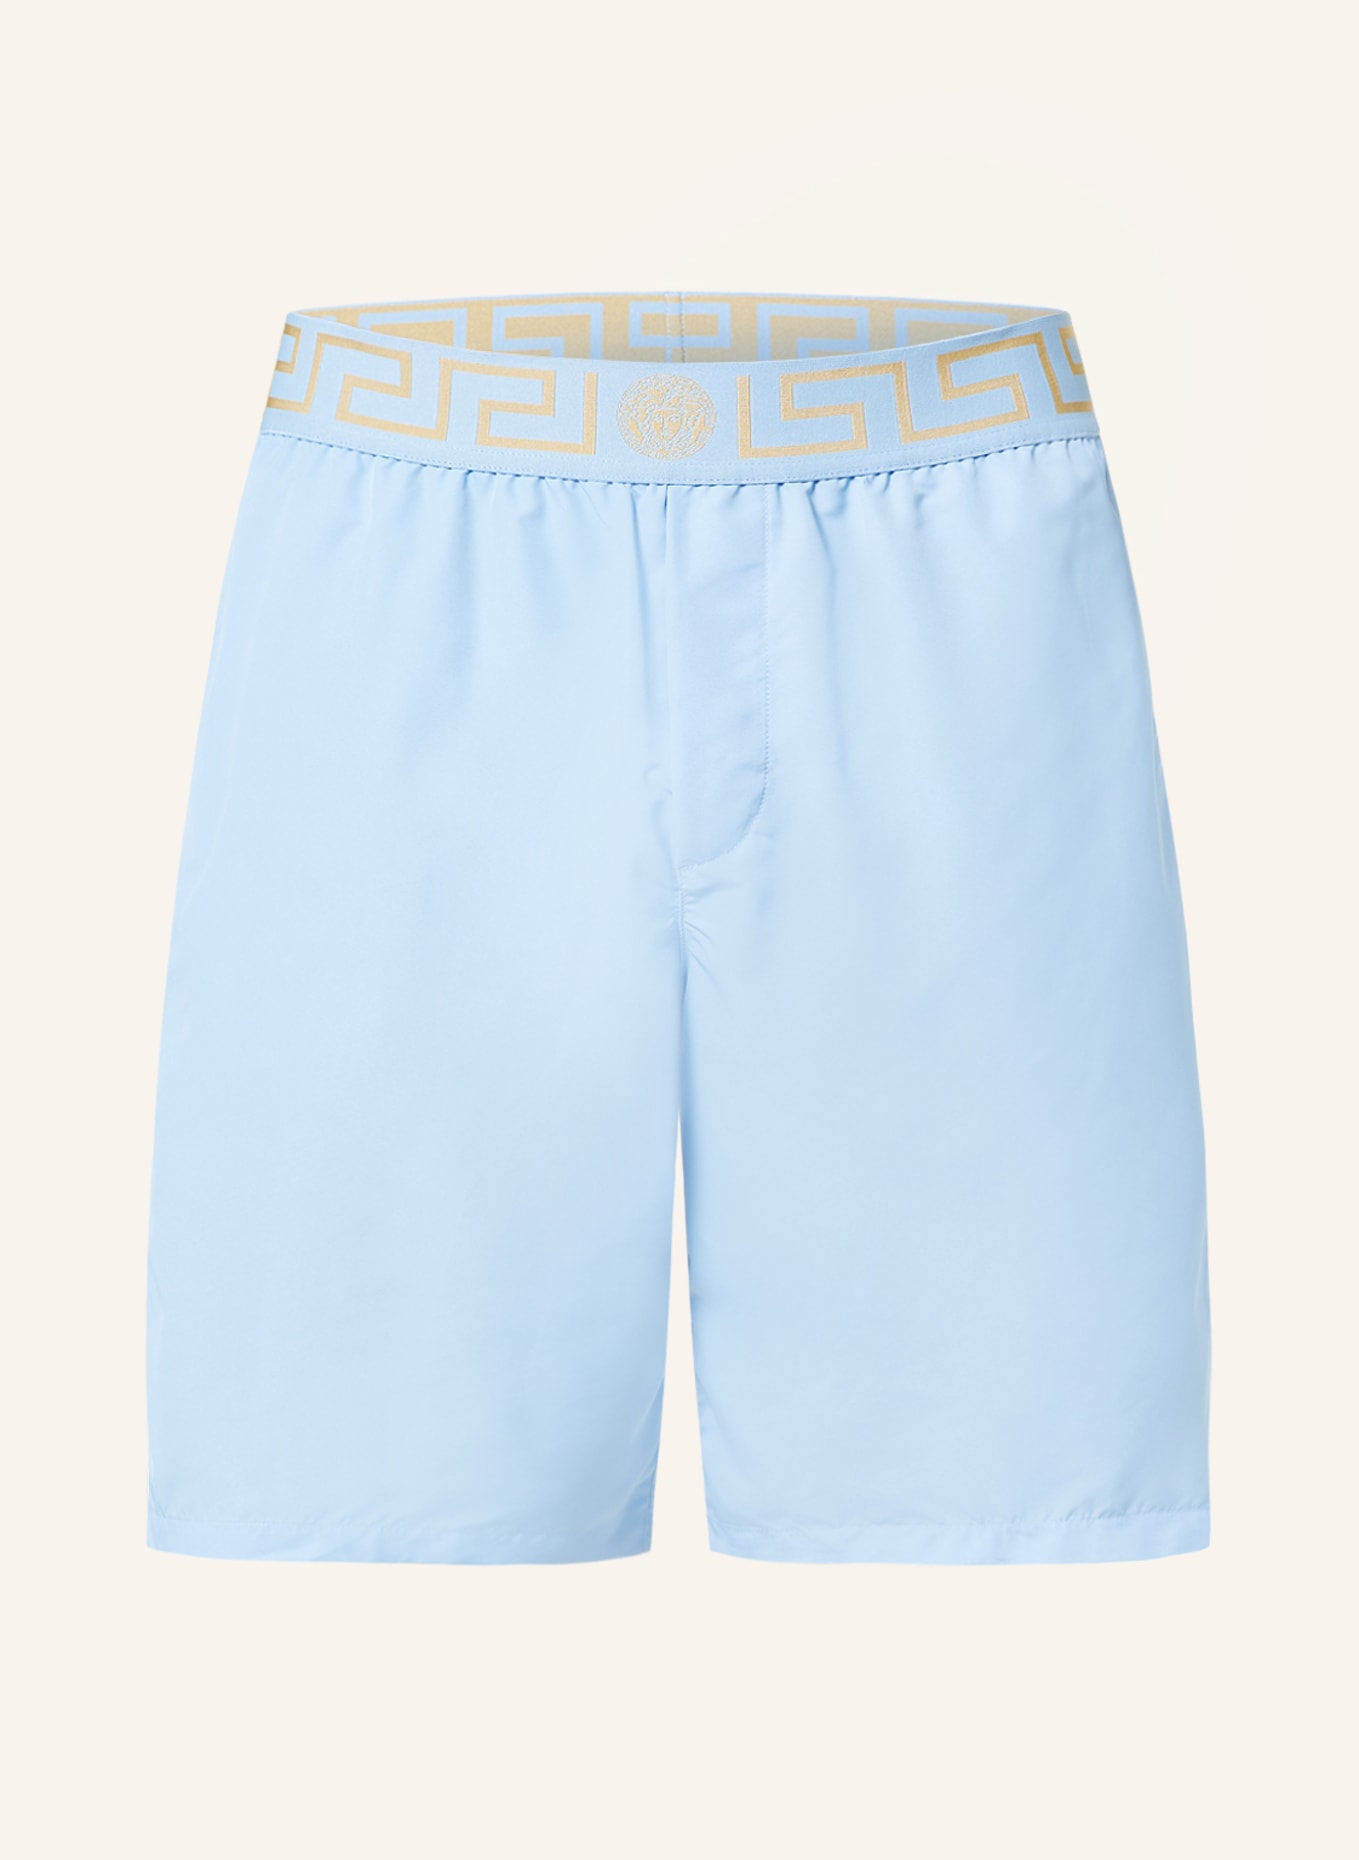 VERSACE Swim shorts, Color: LIGHT BLUE (Image 1)